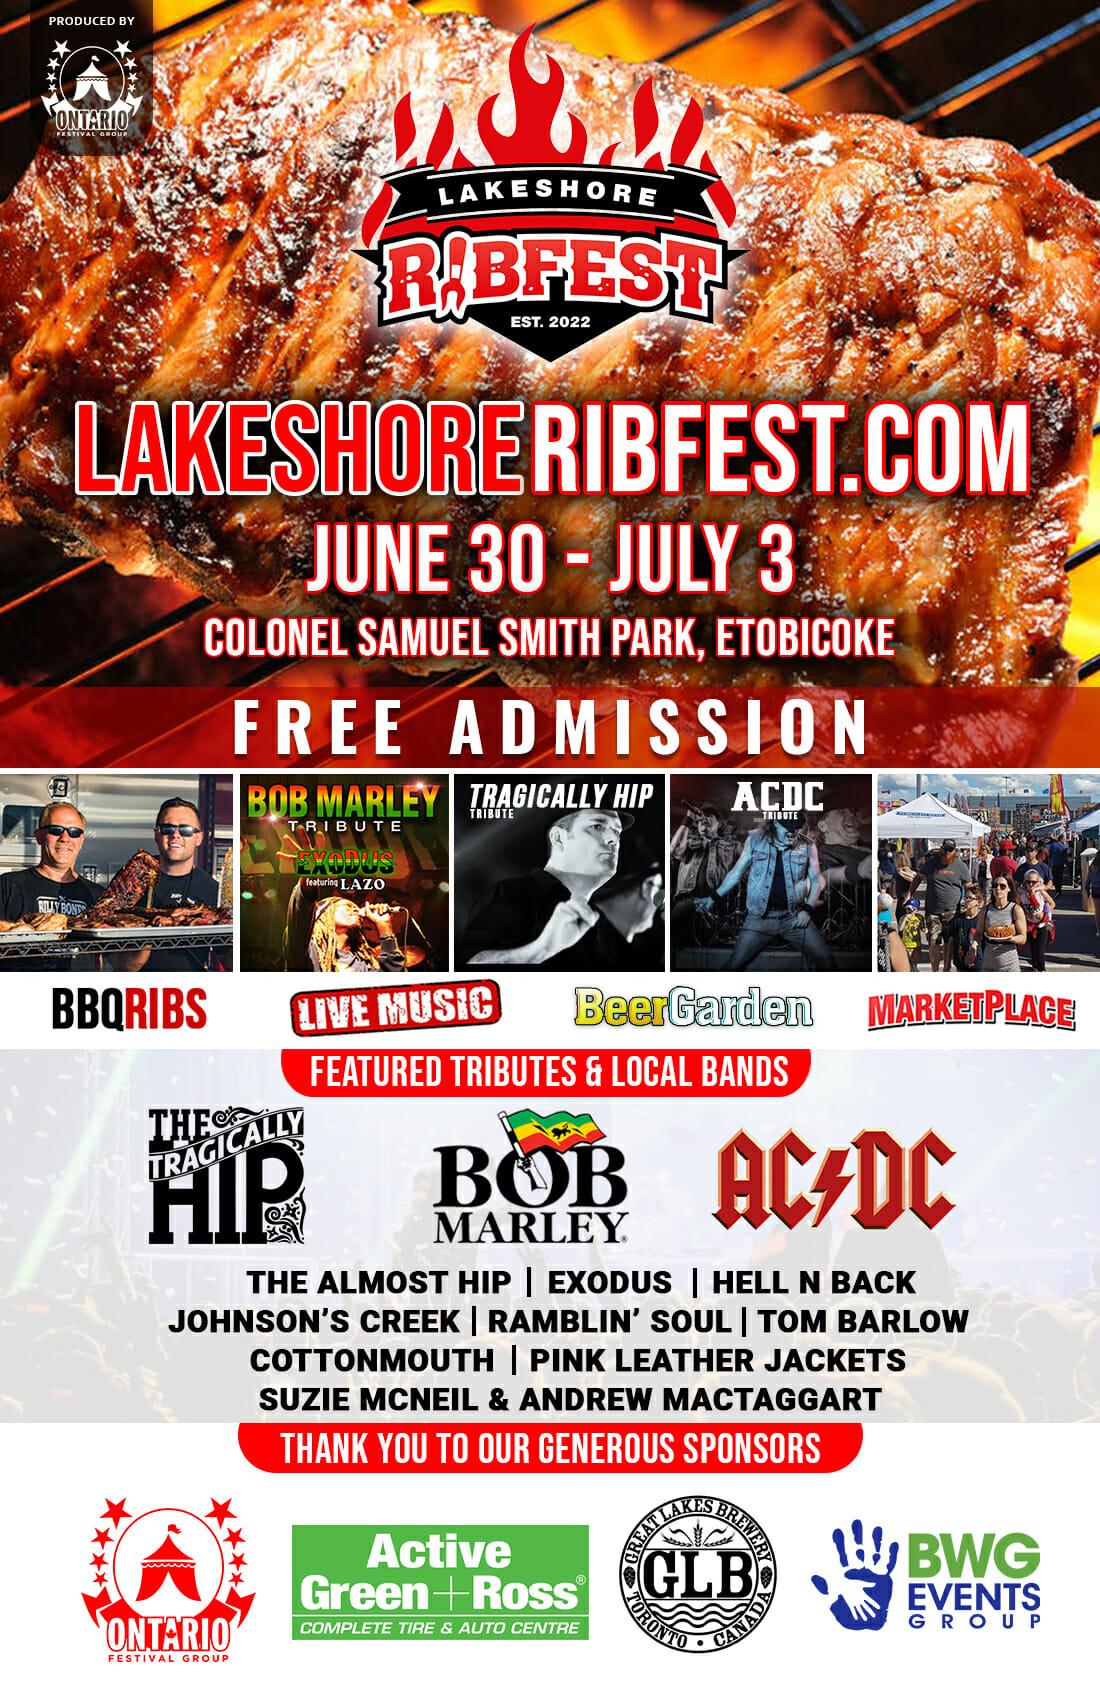 LakeshoreRibfest Ontario Festival Group